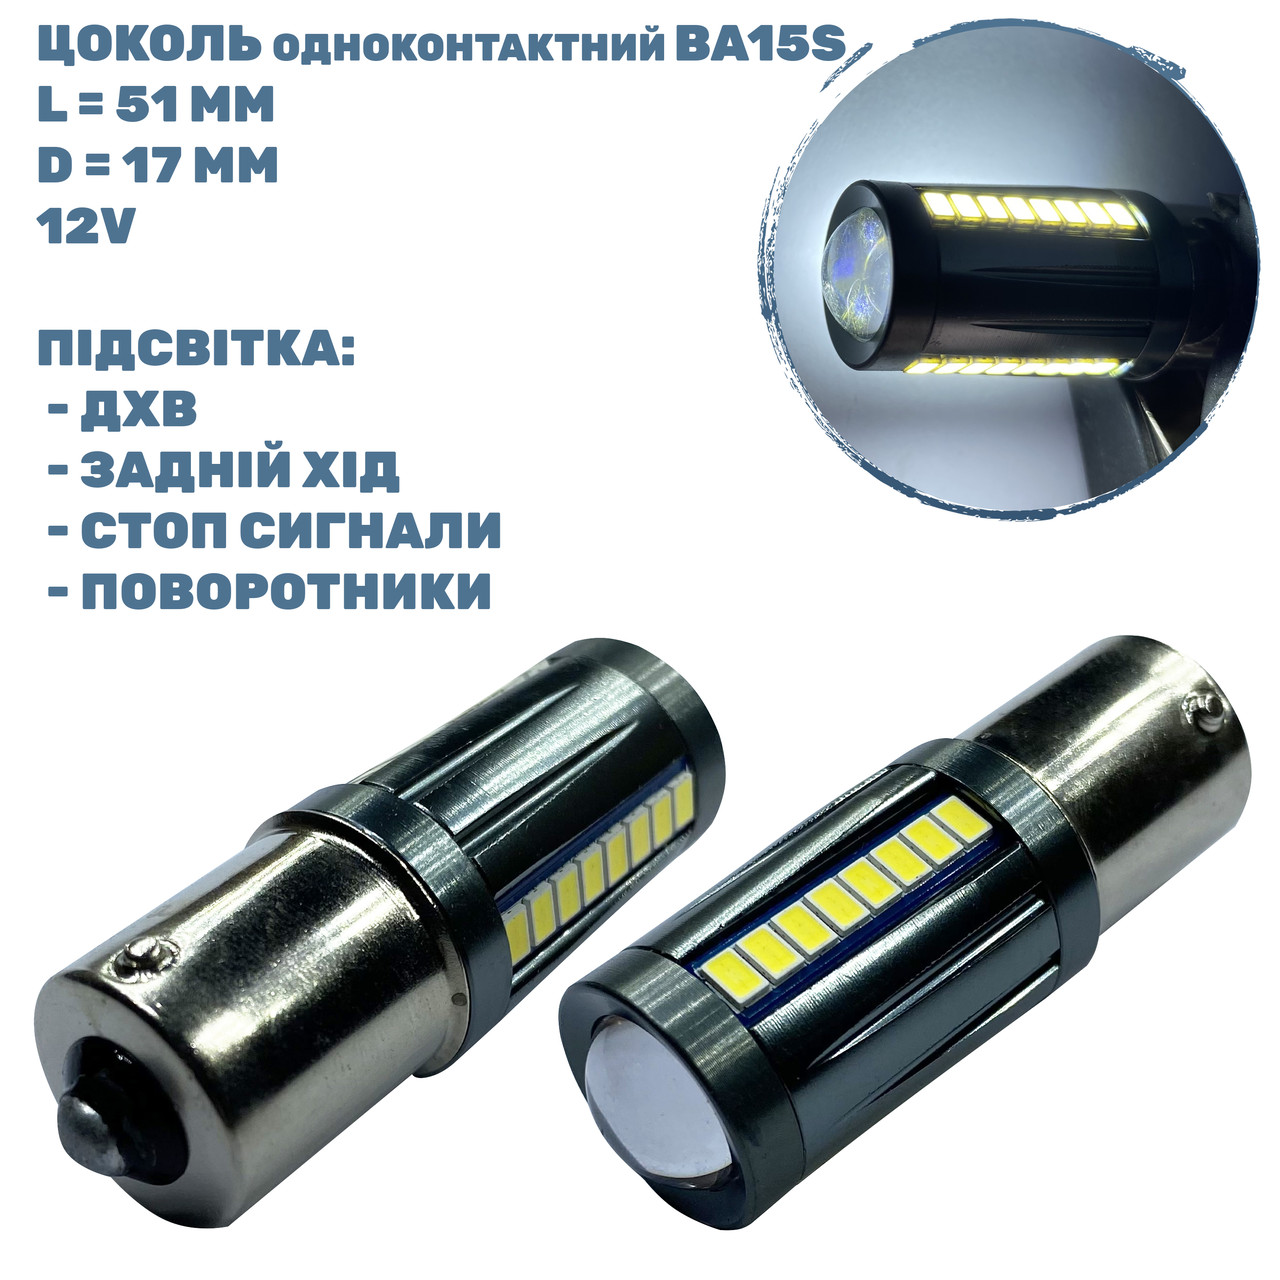 Лампа LED цоколь одноконтактний BA15S; 3W; 12-24-V; 27 діодів;D-17 mm; L-51 mm (T20-B15-027W3020P)